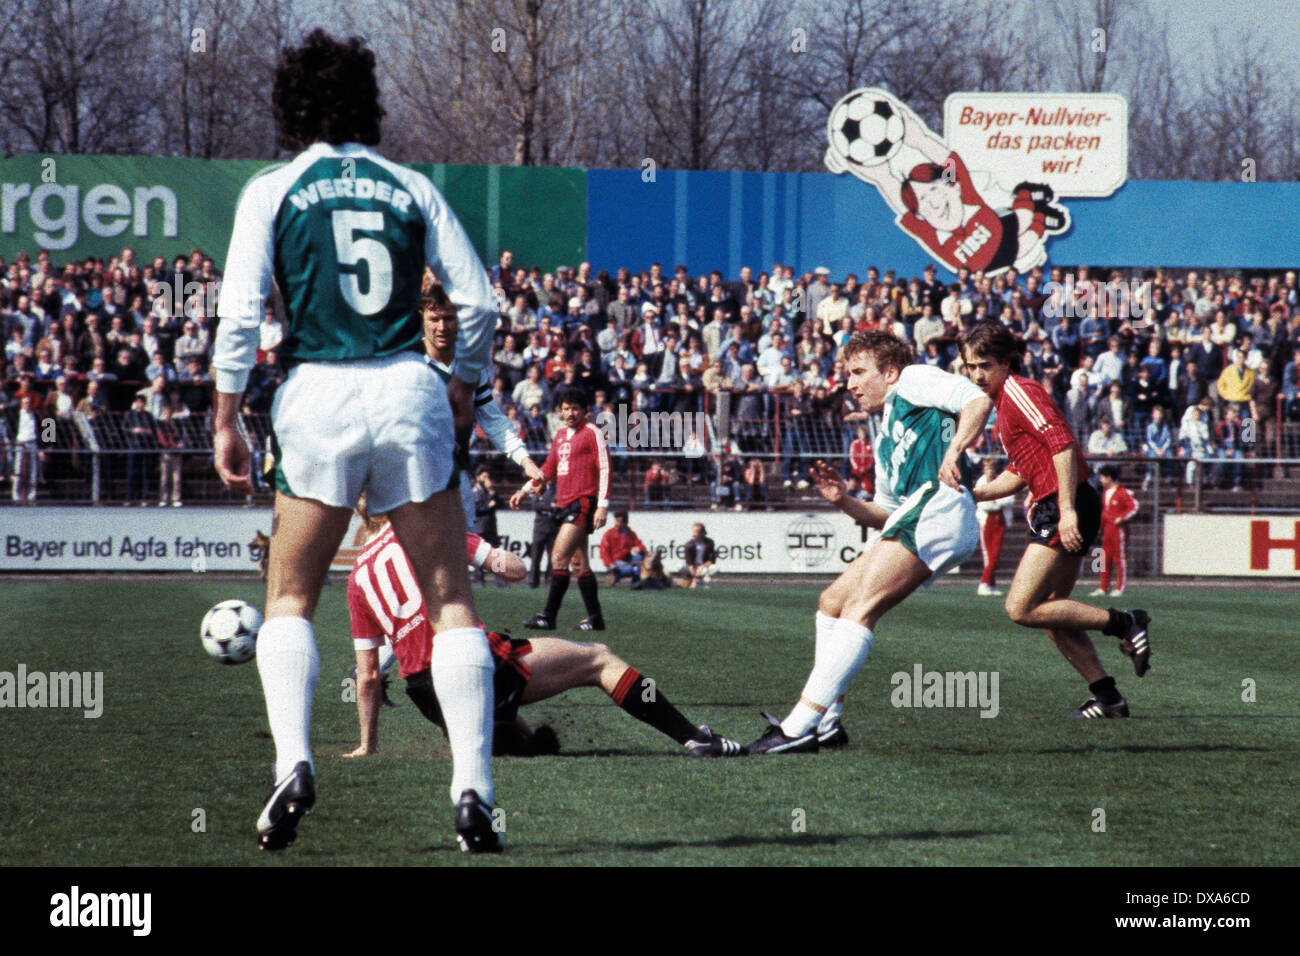 Fußball, Bundesliga, 1983/1984, Ulrich Haberland Stadion, Bayer 04 Leverkusen gegen SV Werder Bremen 0:0, Szene des Spiels, Norbert Meier (Werder) 2.f.r. kämpfen, rechts Helmut Winklhofer (Bayer) Stockfoto